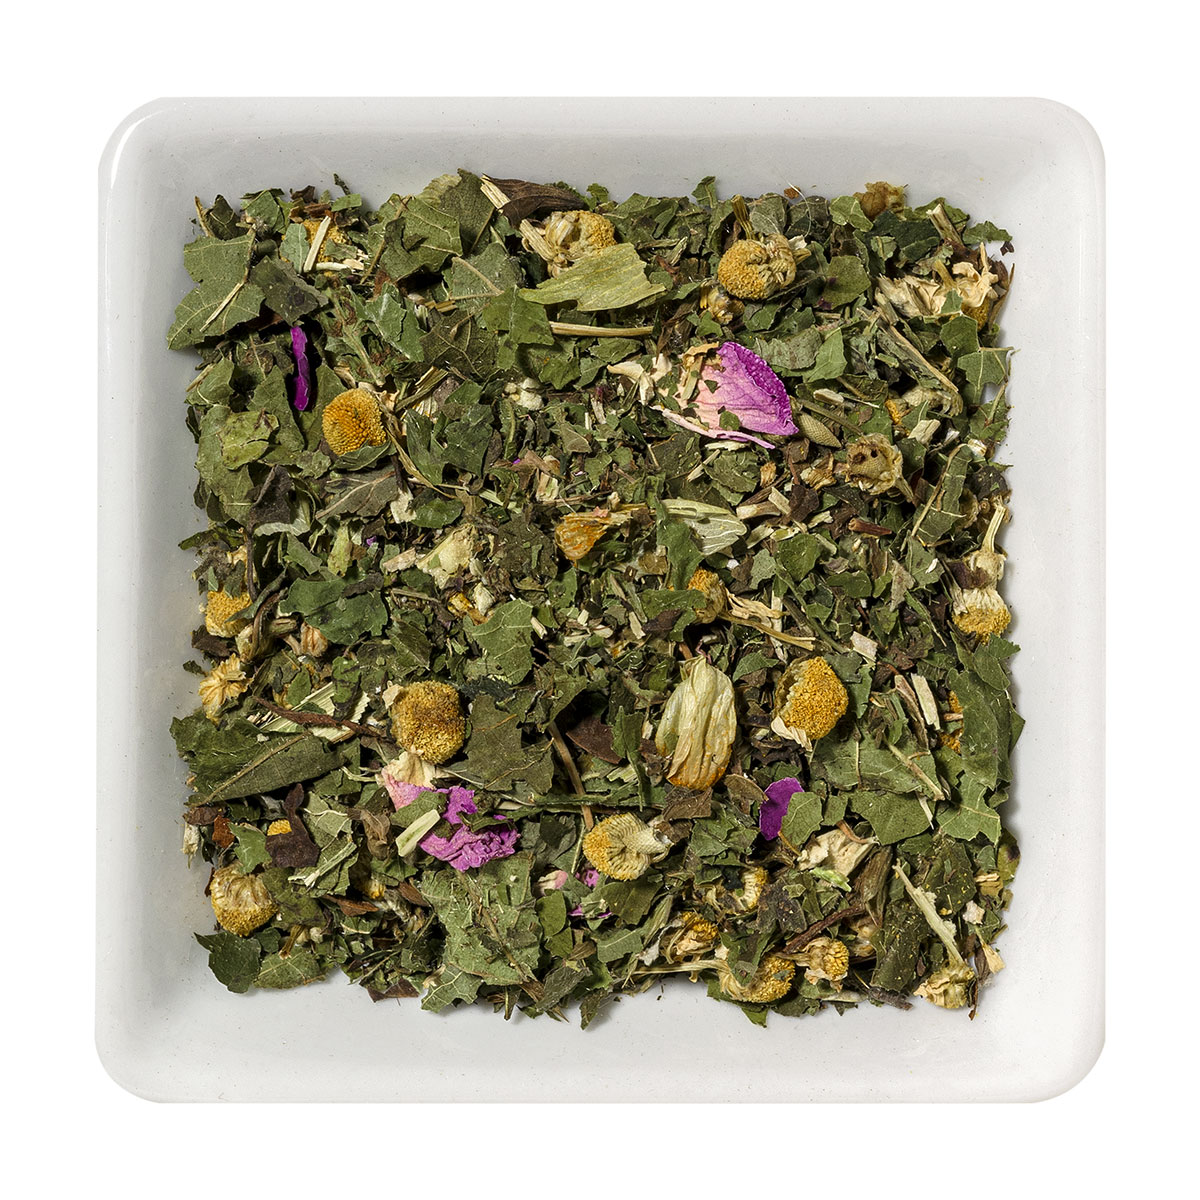 Thé aux herbes de la pleine conscience et thé bio apaisant